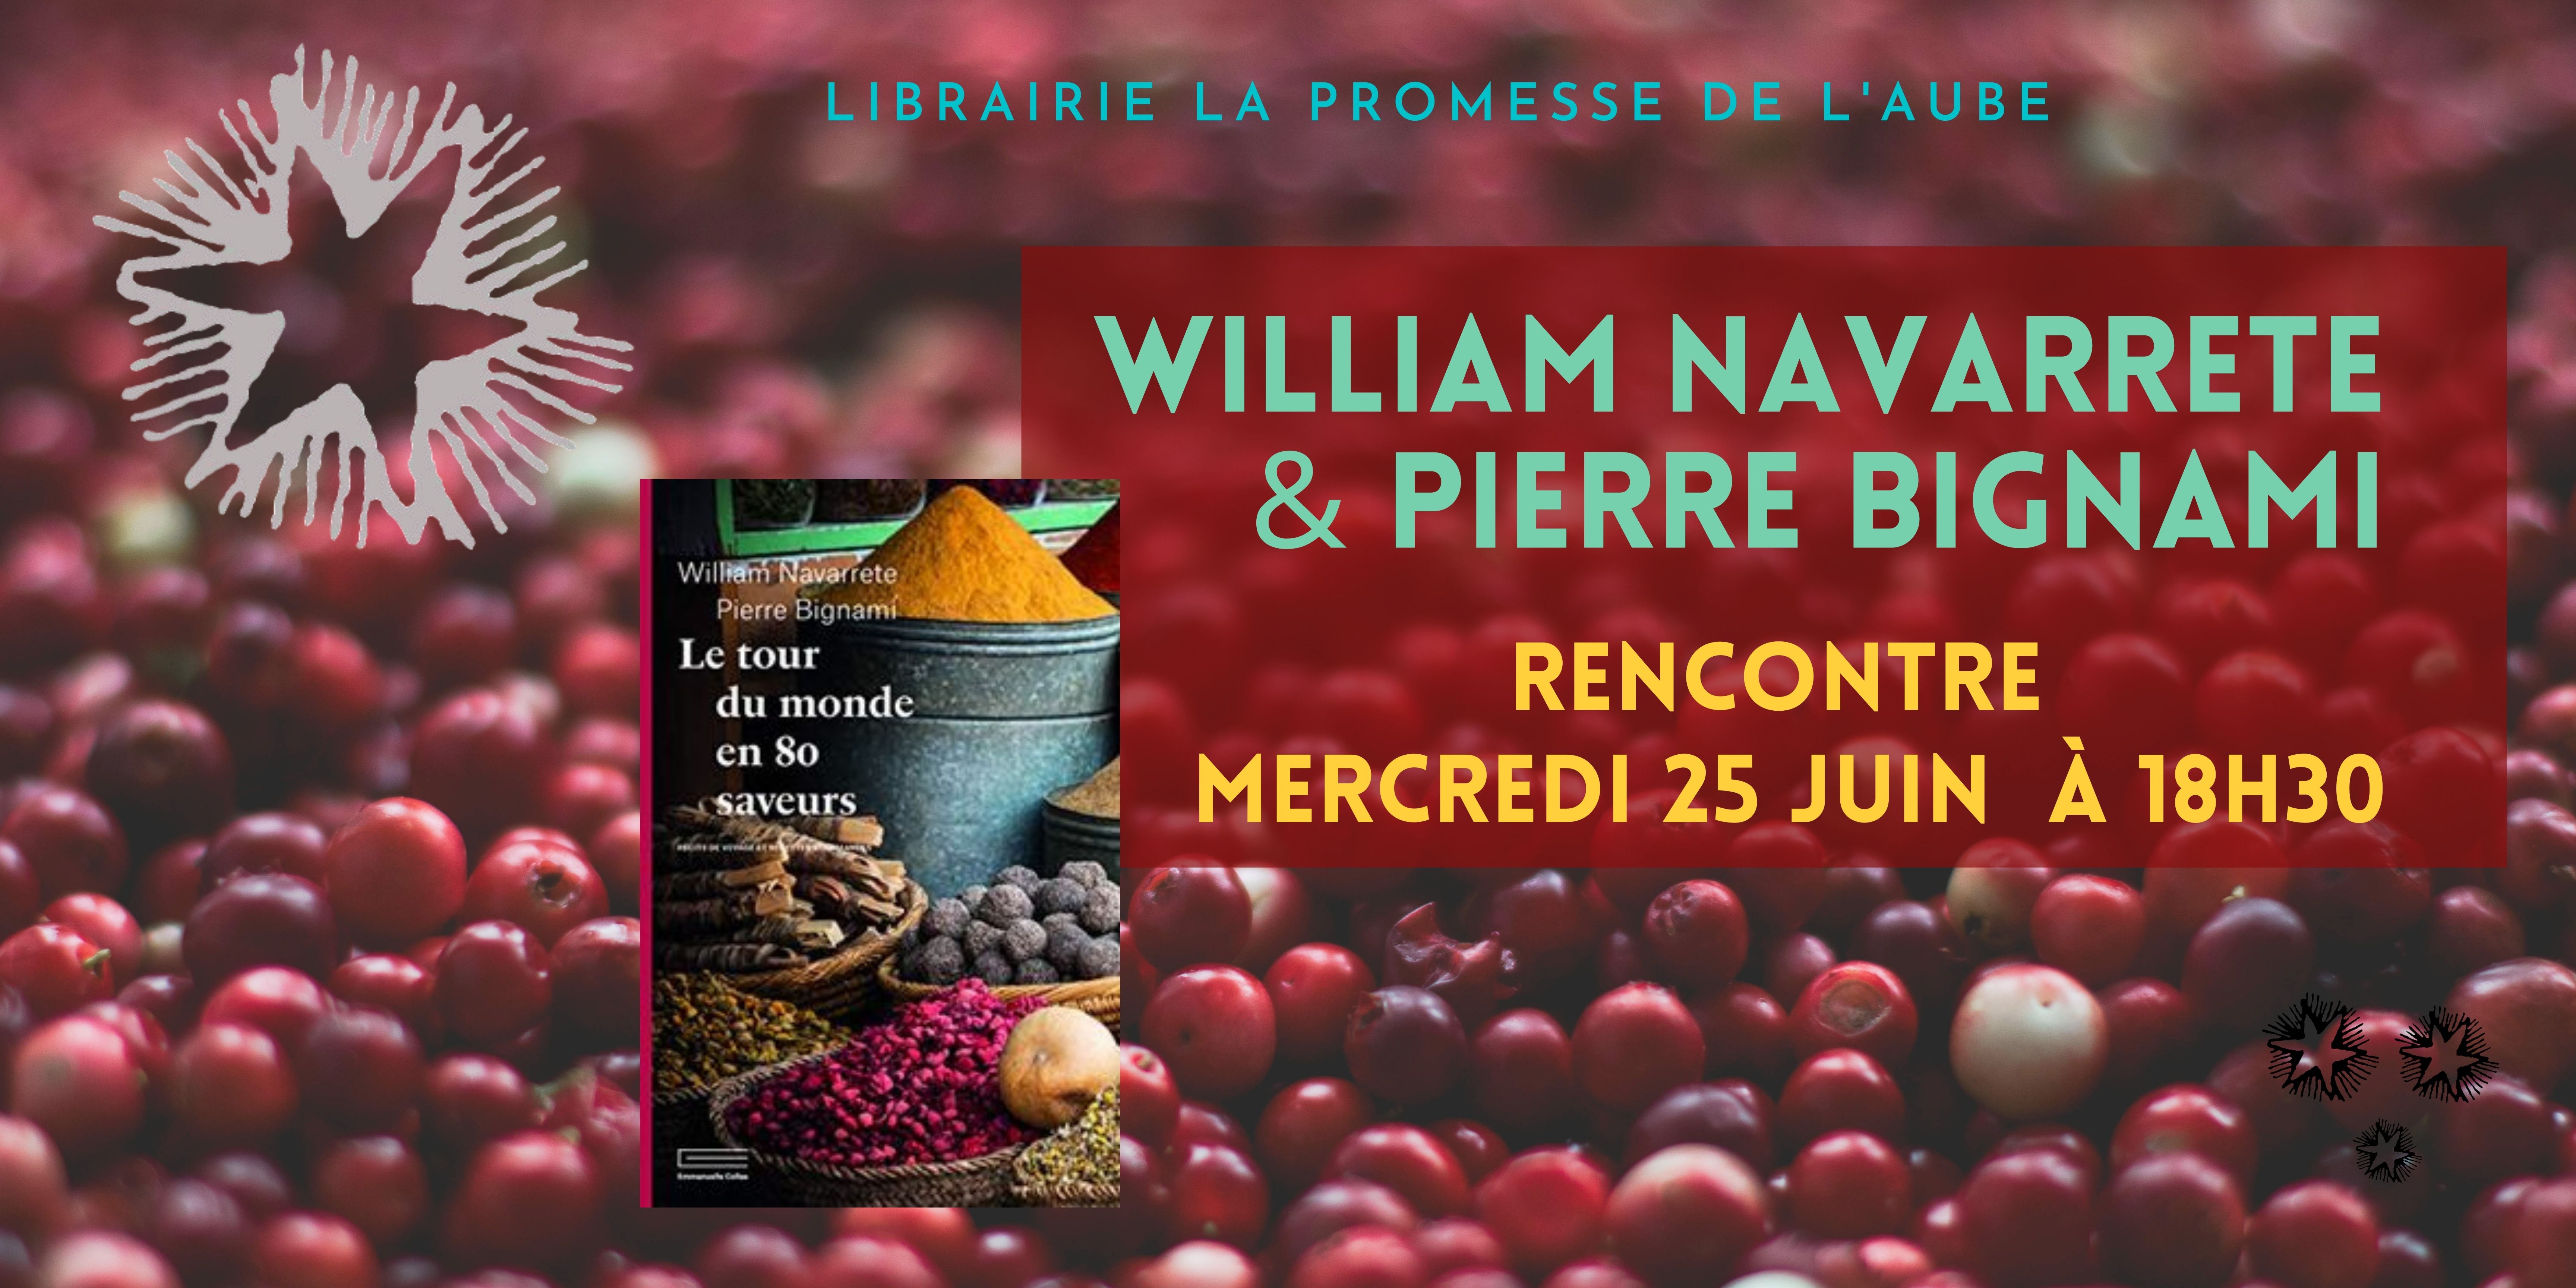 Rencontre William Navarrete et Pierre Bignami